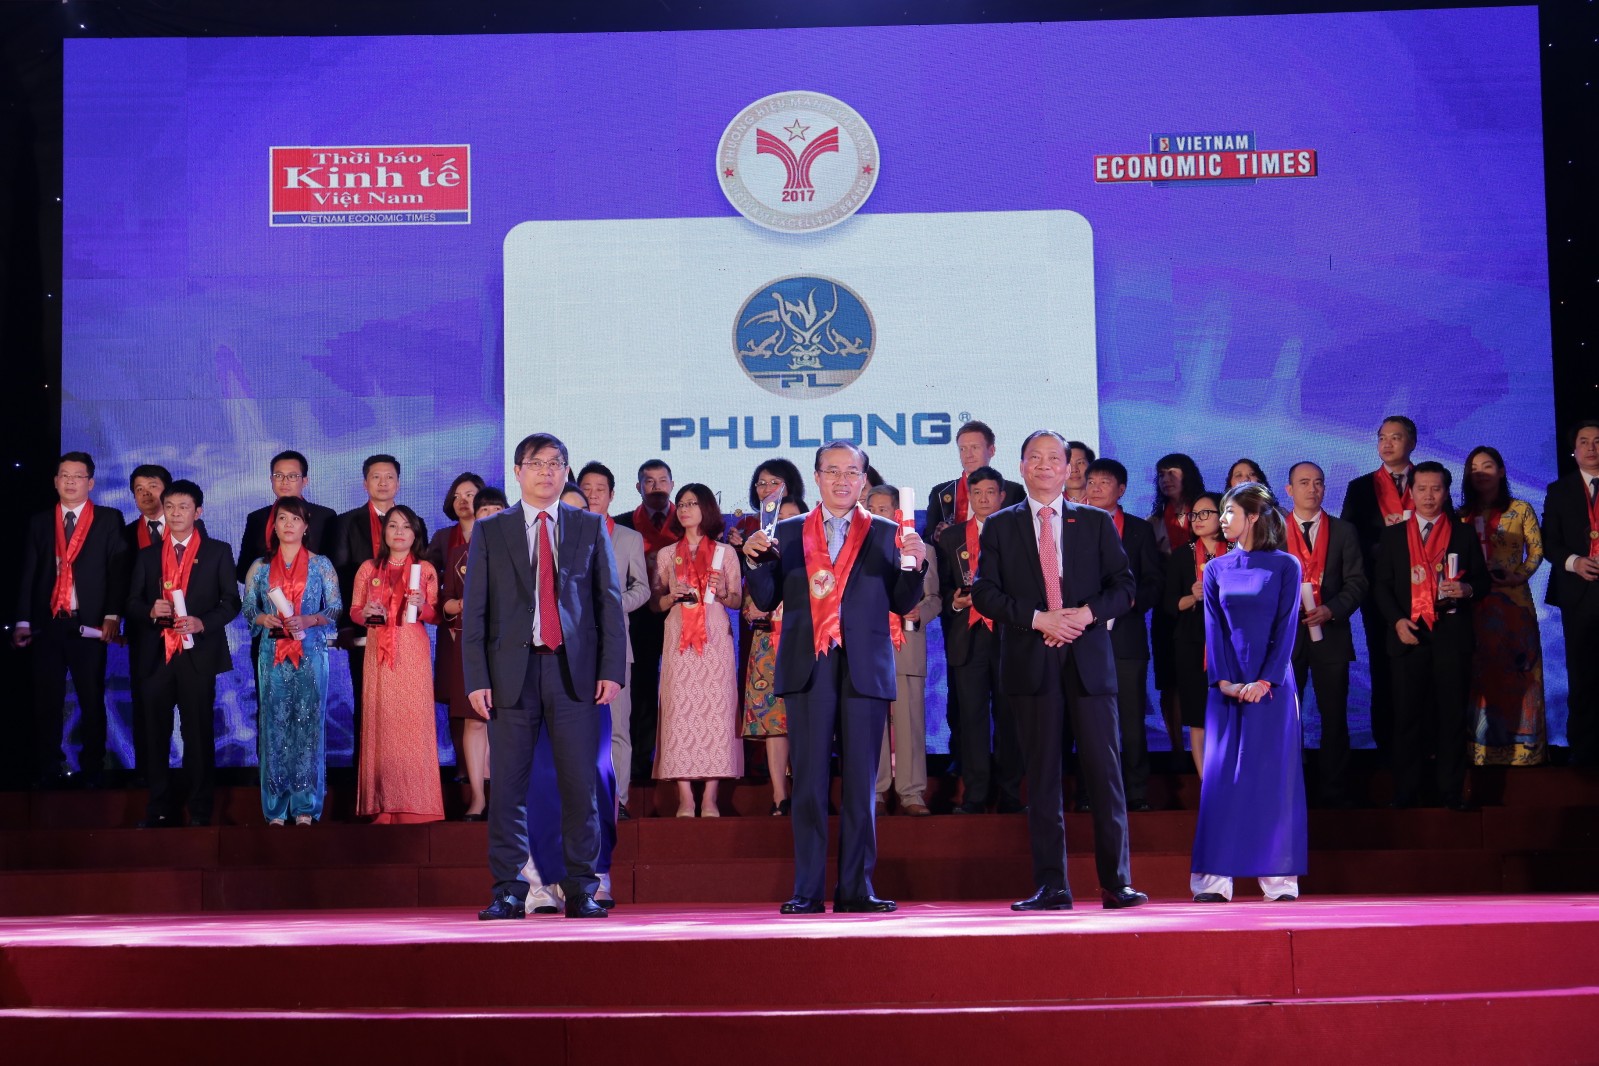 Cũng trong ngày 14/4, Phú Long đã được vinh danh “Thương hiệu mạnh Việt Nam 2017” và Khu đô thị Dragon City cũng chính thức được chứng nhận “Khu đô thị tốt nhất” của Giải thưởng Quốc gia Bất động sản Việt Nam.